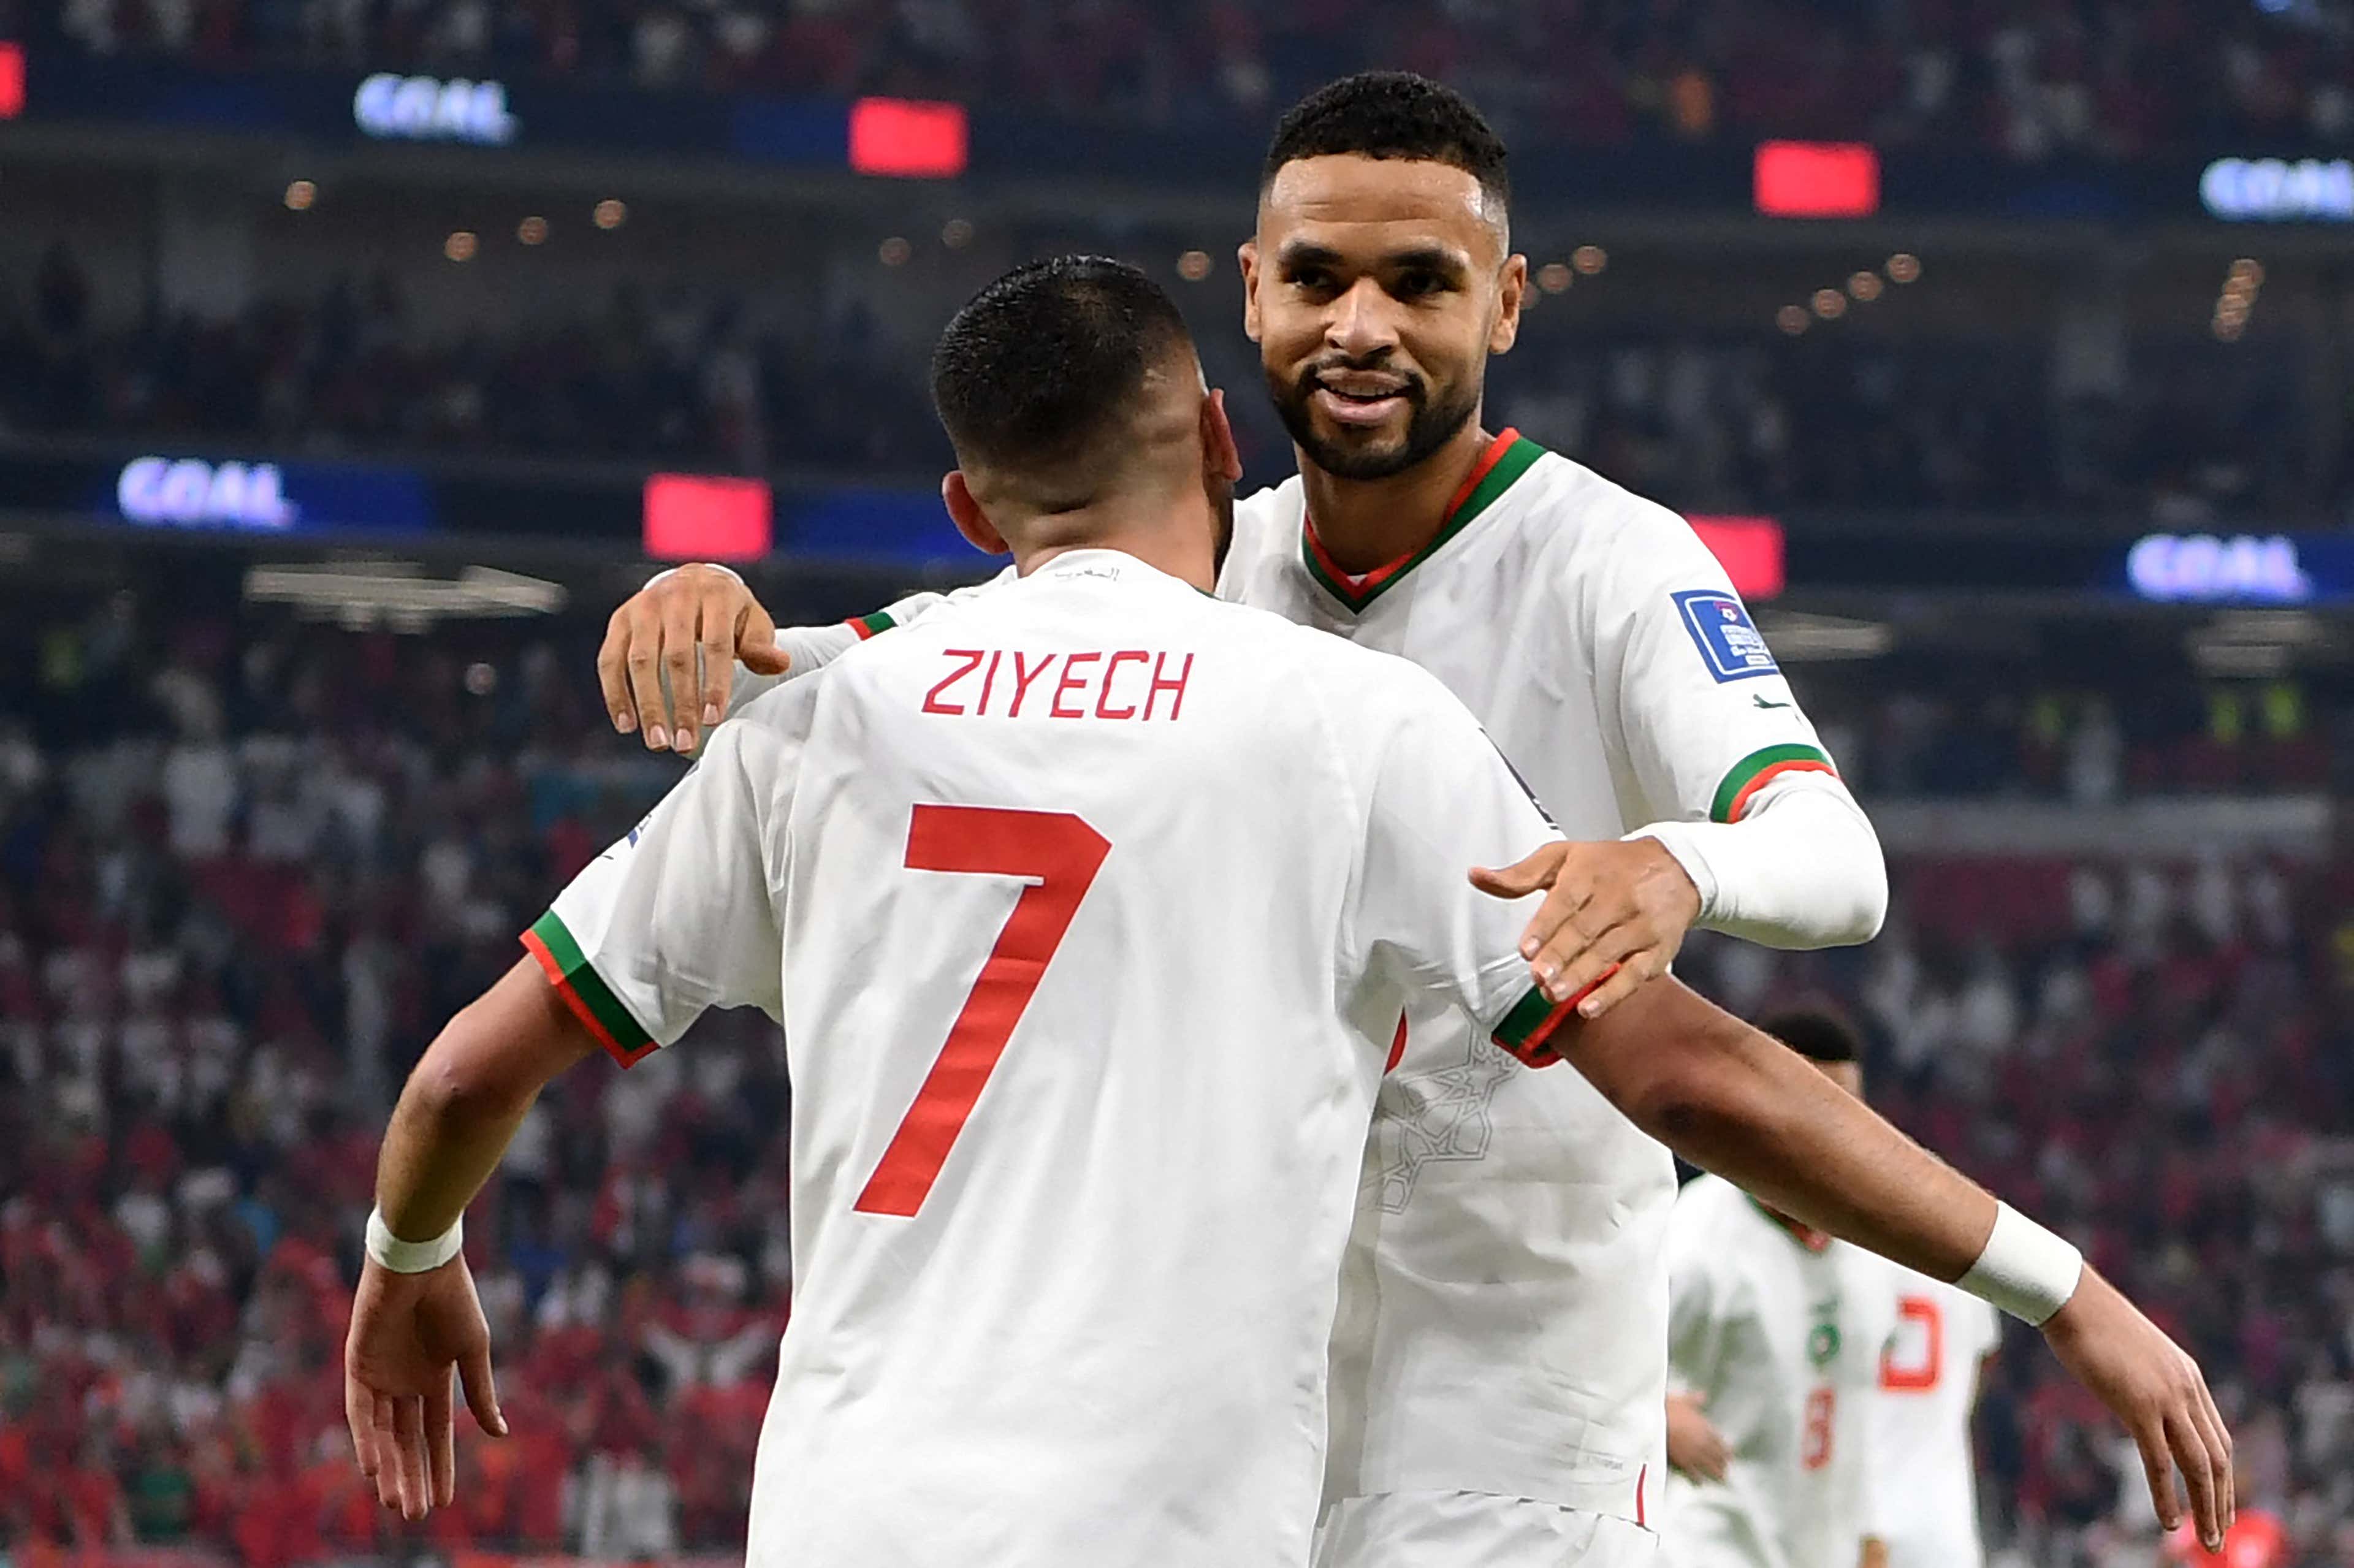 En-Nesyri Morocco Canada World Cup 2022